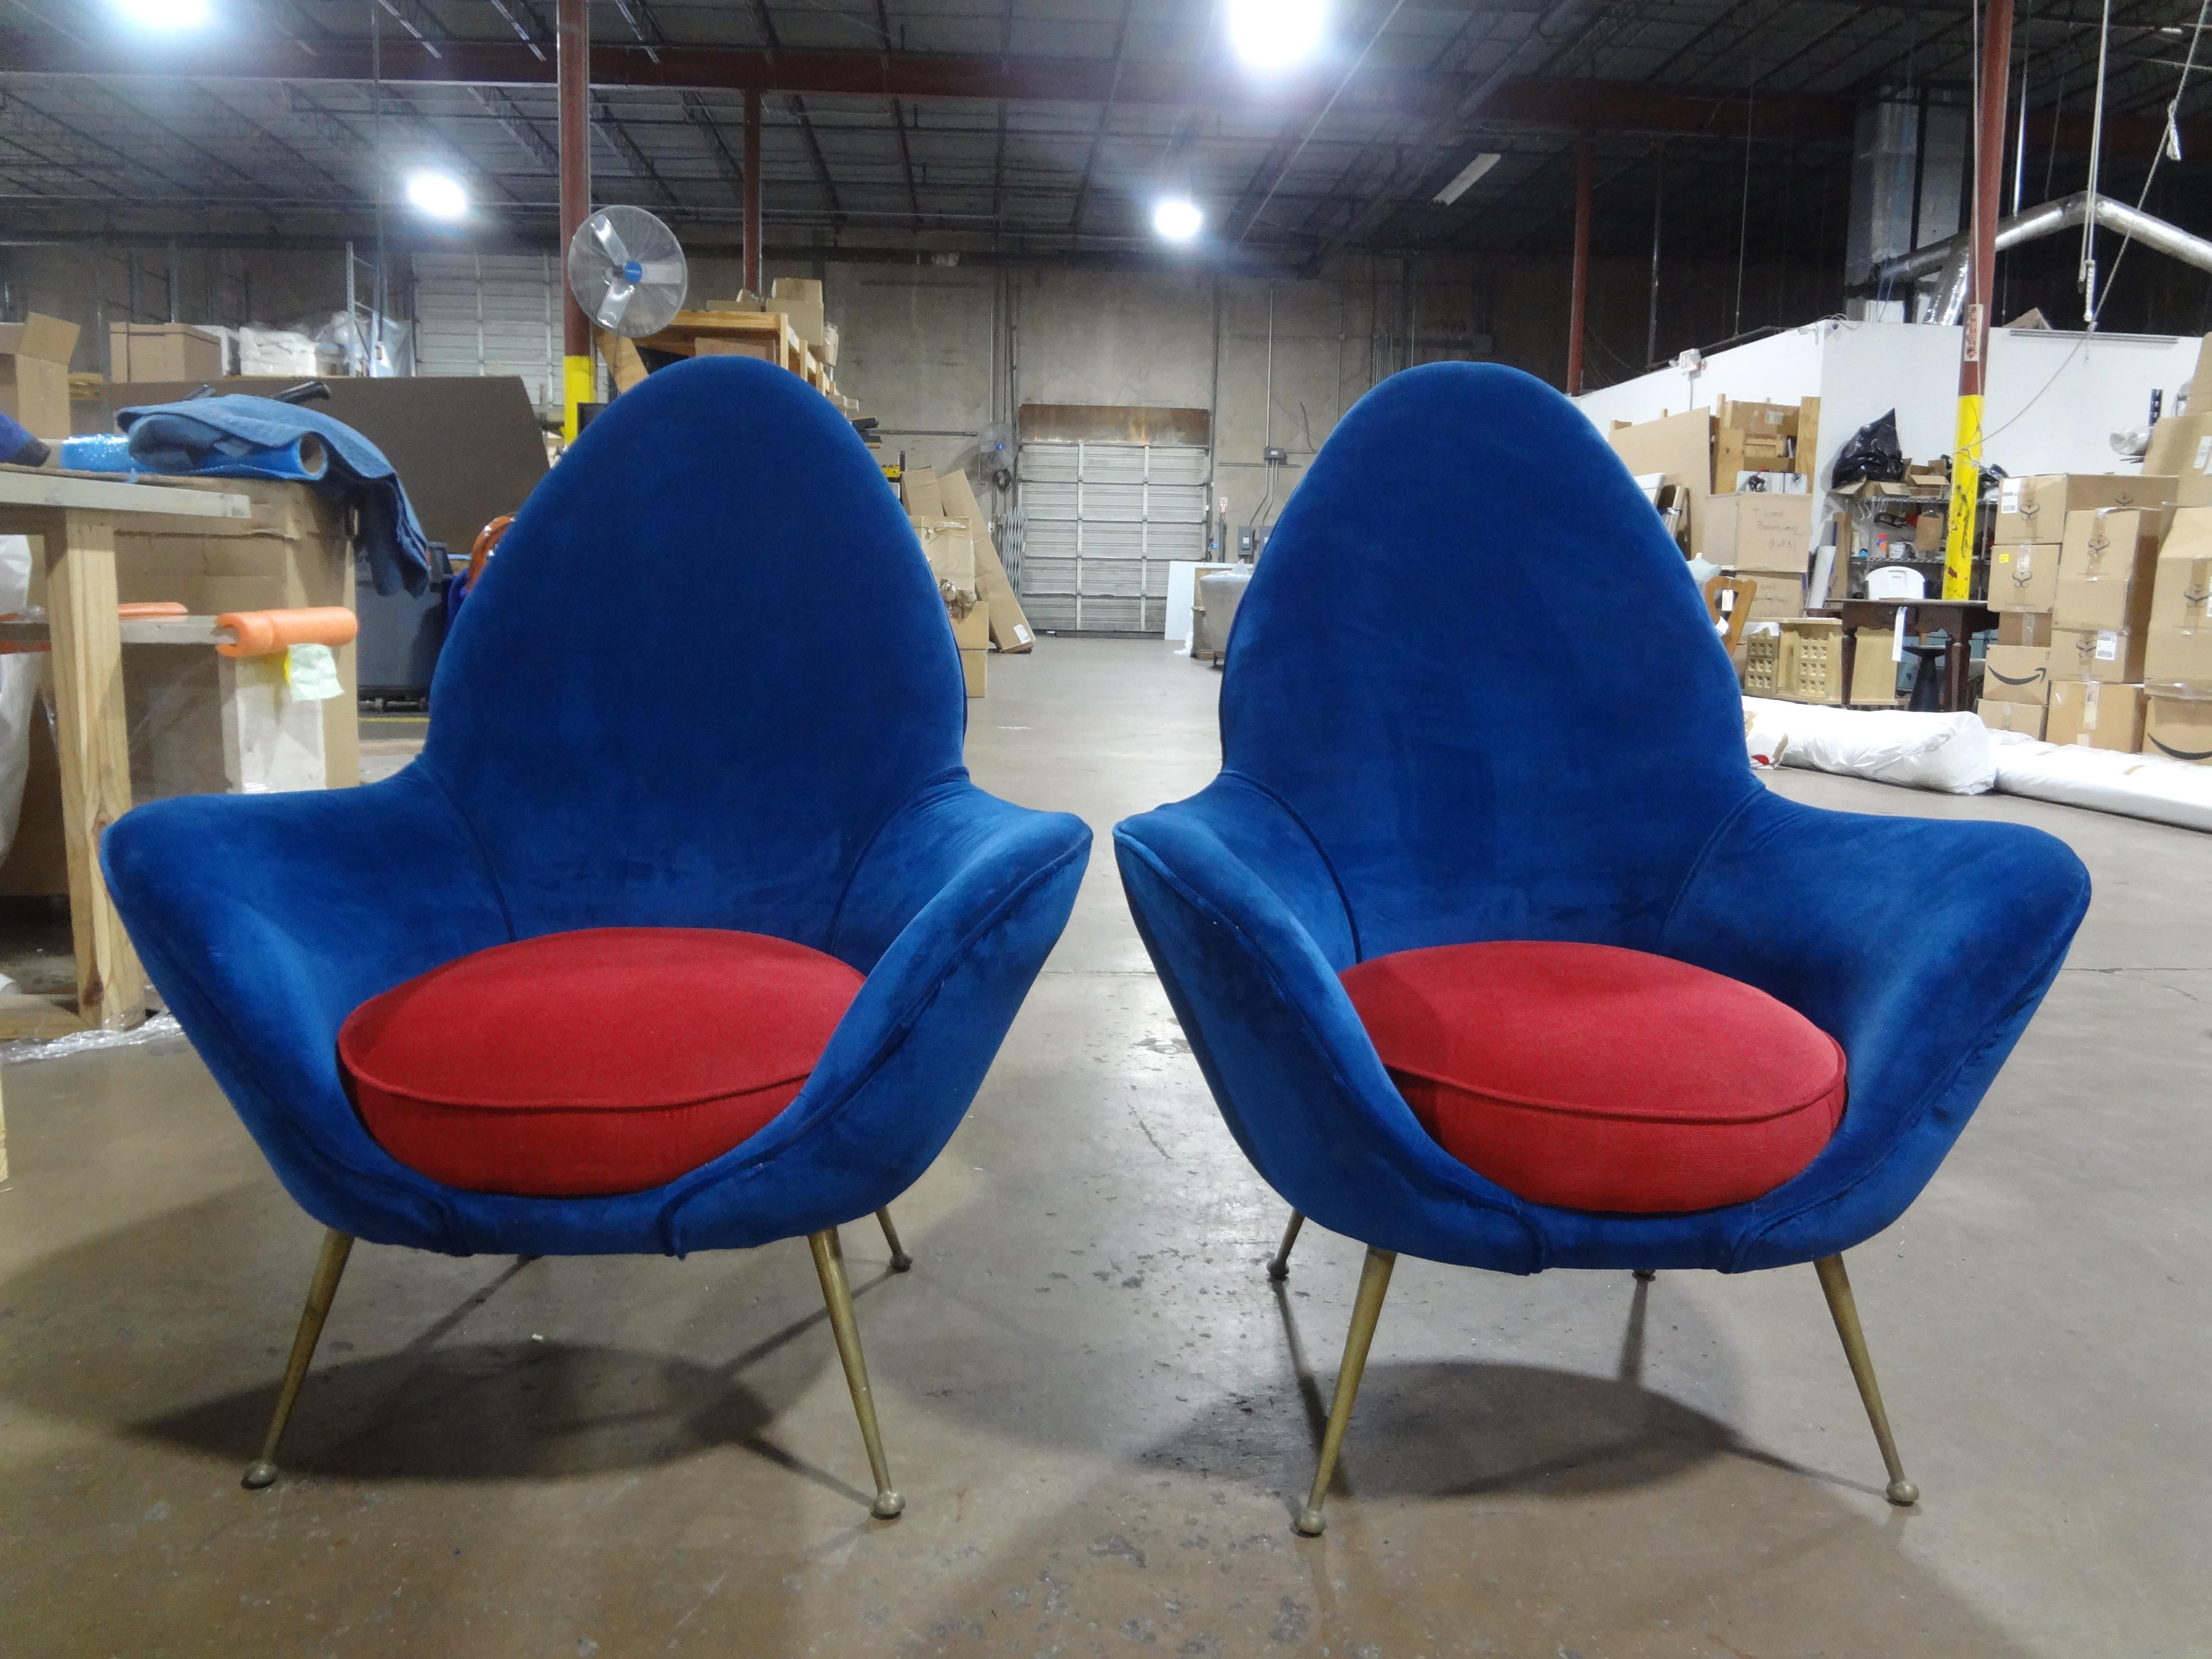 Paire de chaises longues modernes italiennes par Marco Zanuso.
Ces chaises modernes du milieu du siècle, inspirées par Gio Ponti et dotées de pieds en laiton évasés, ont été récemment rembourrées et sont très confortables.
Magnifique sous tous les